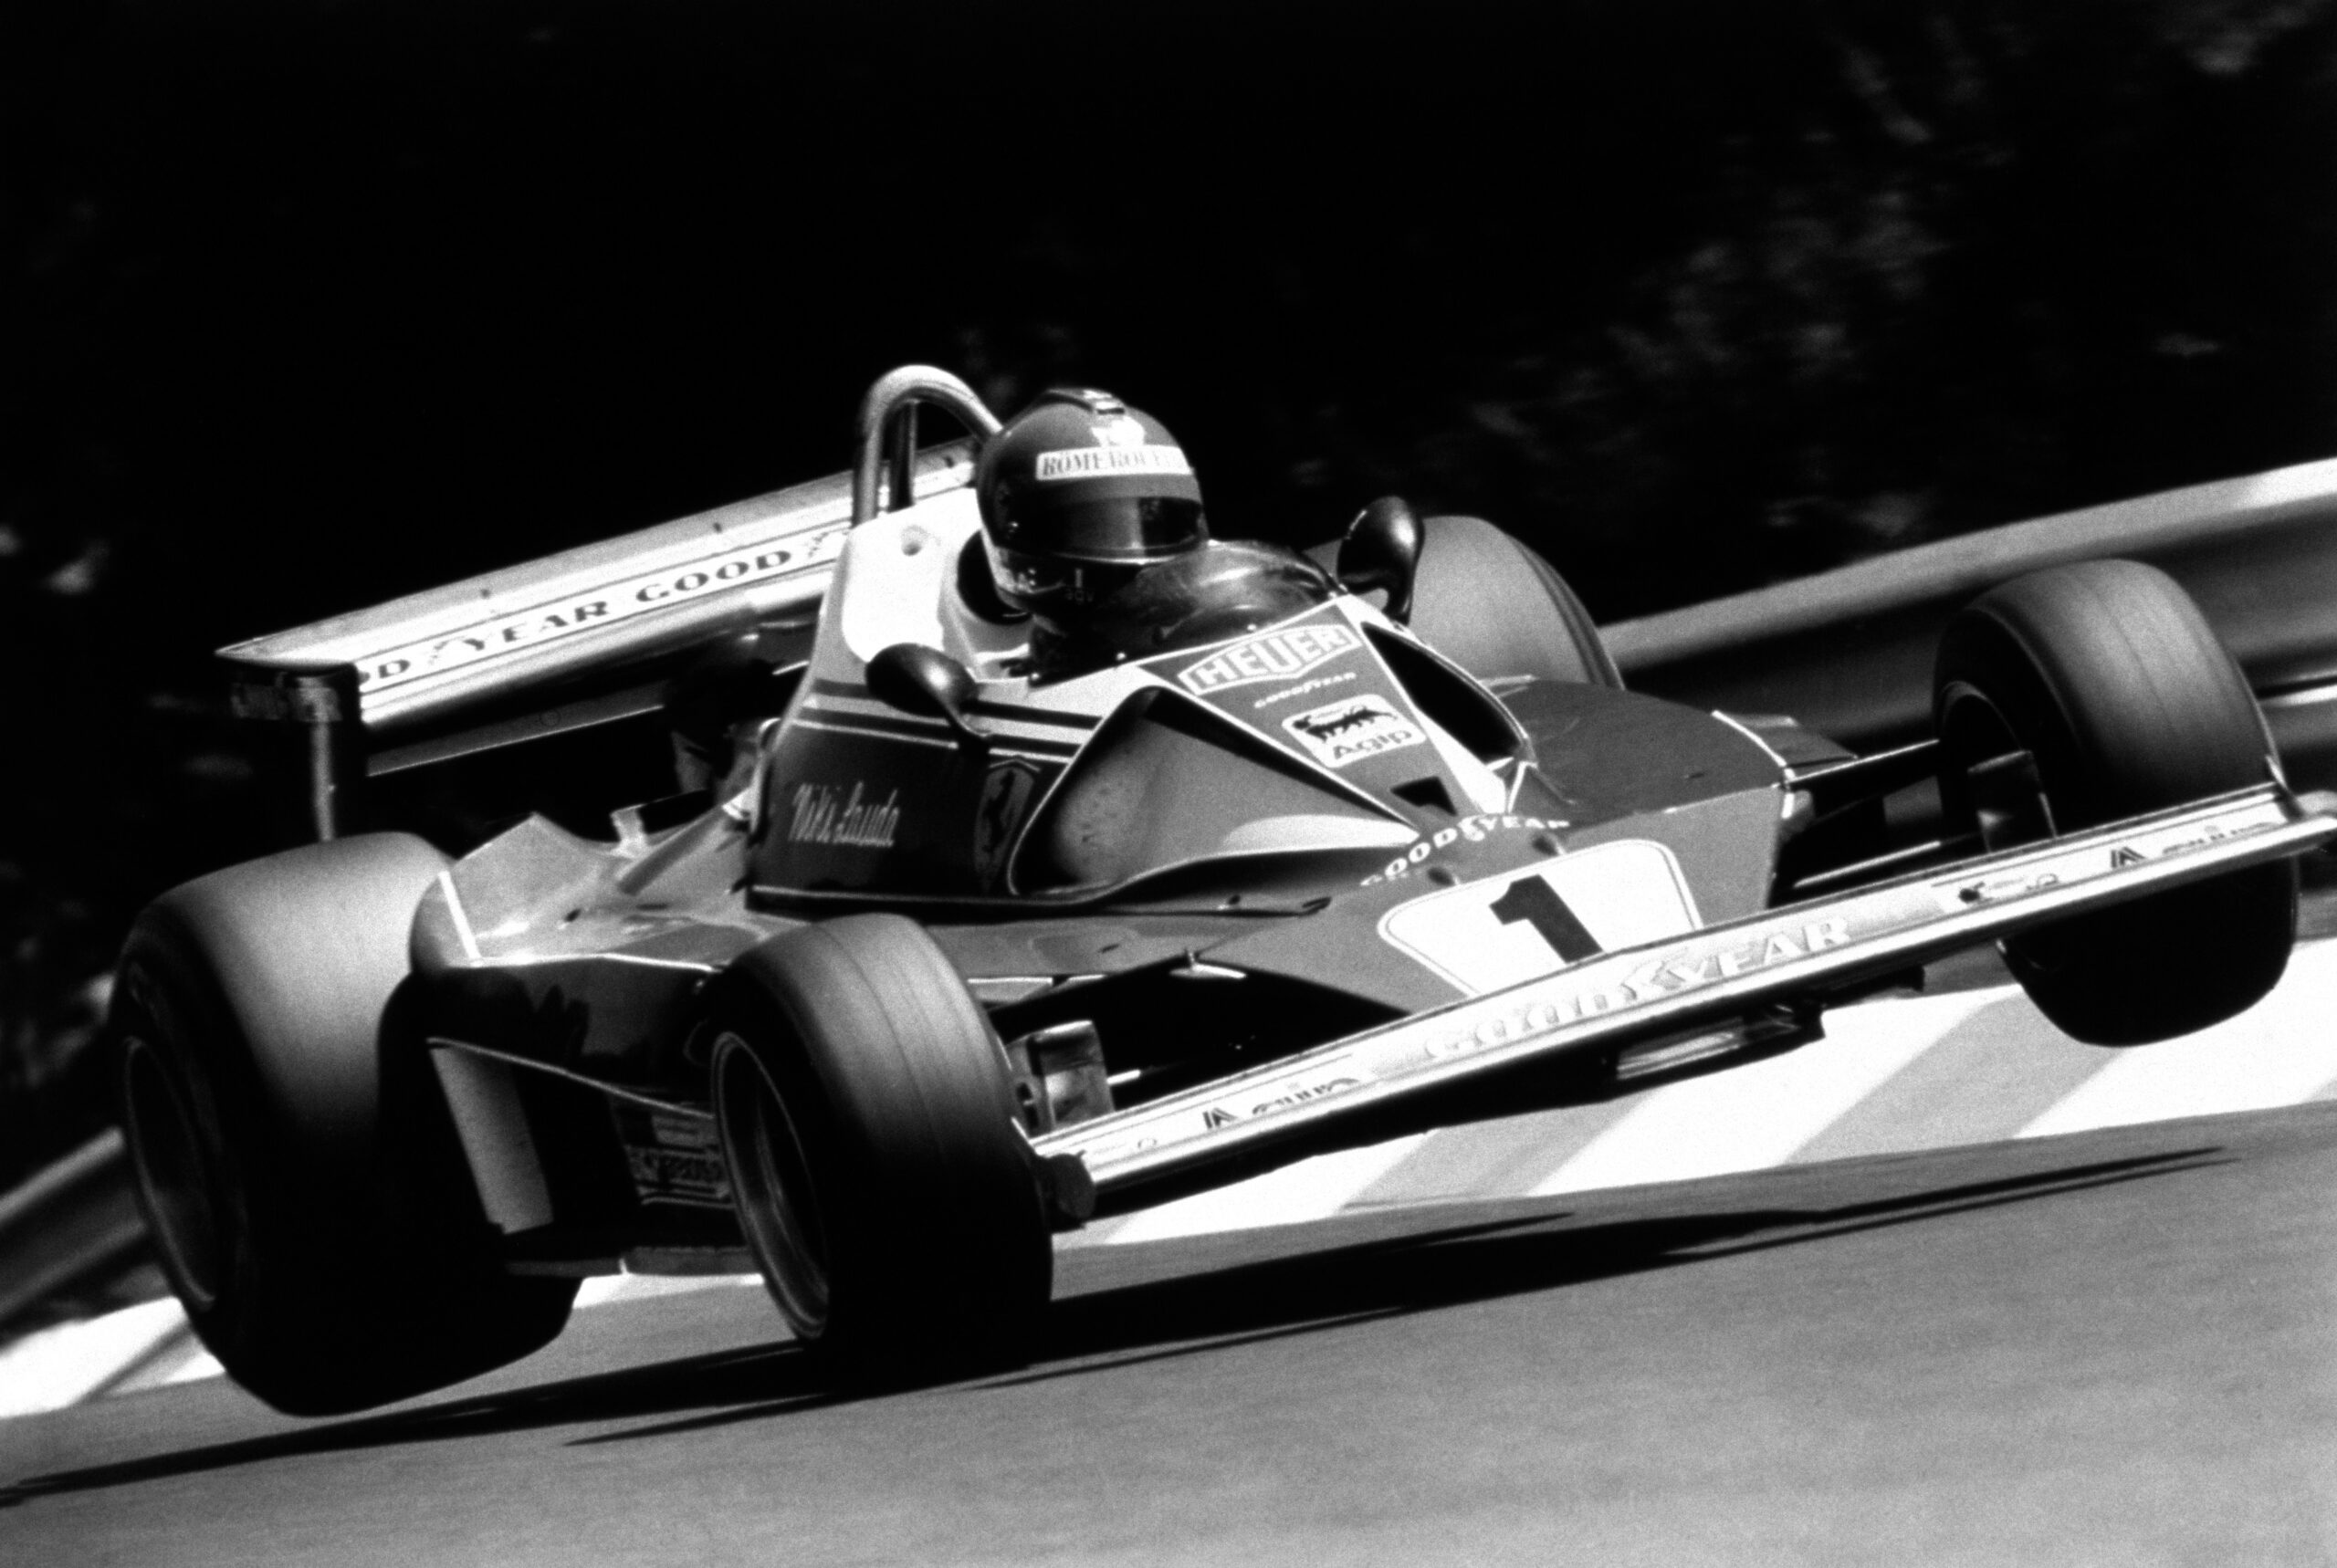 Vzpomínka na Nikiho Laudu, který v F1 debutoval na předchůdci Red Bull Ringu